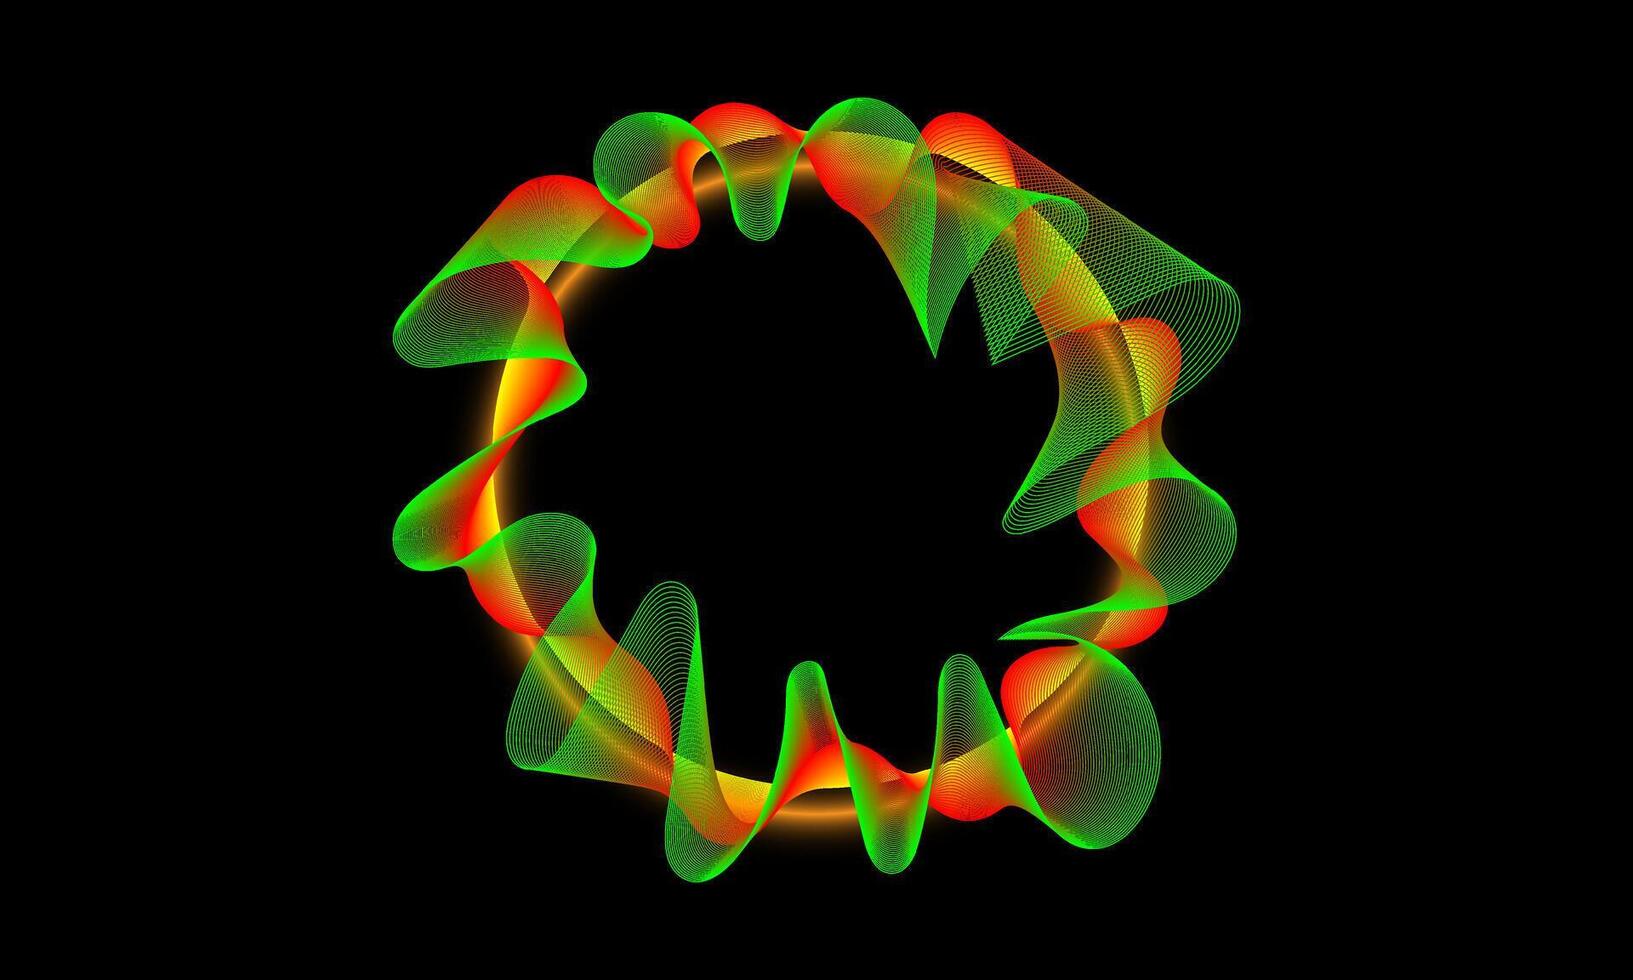 vetenskap, teknologi, ljud Vinka, och digital kommunikation begrepp. strömmande rader och prickar av grön och orange cirkel Vinka mönster på en svart bakgrund. vektor